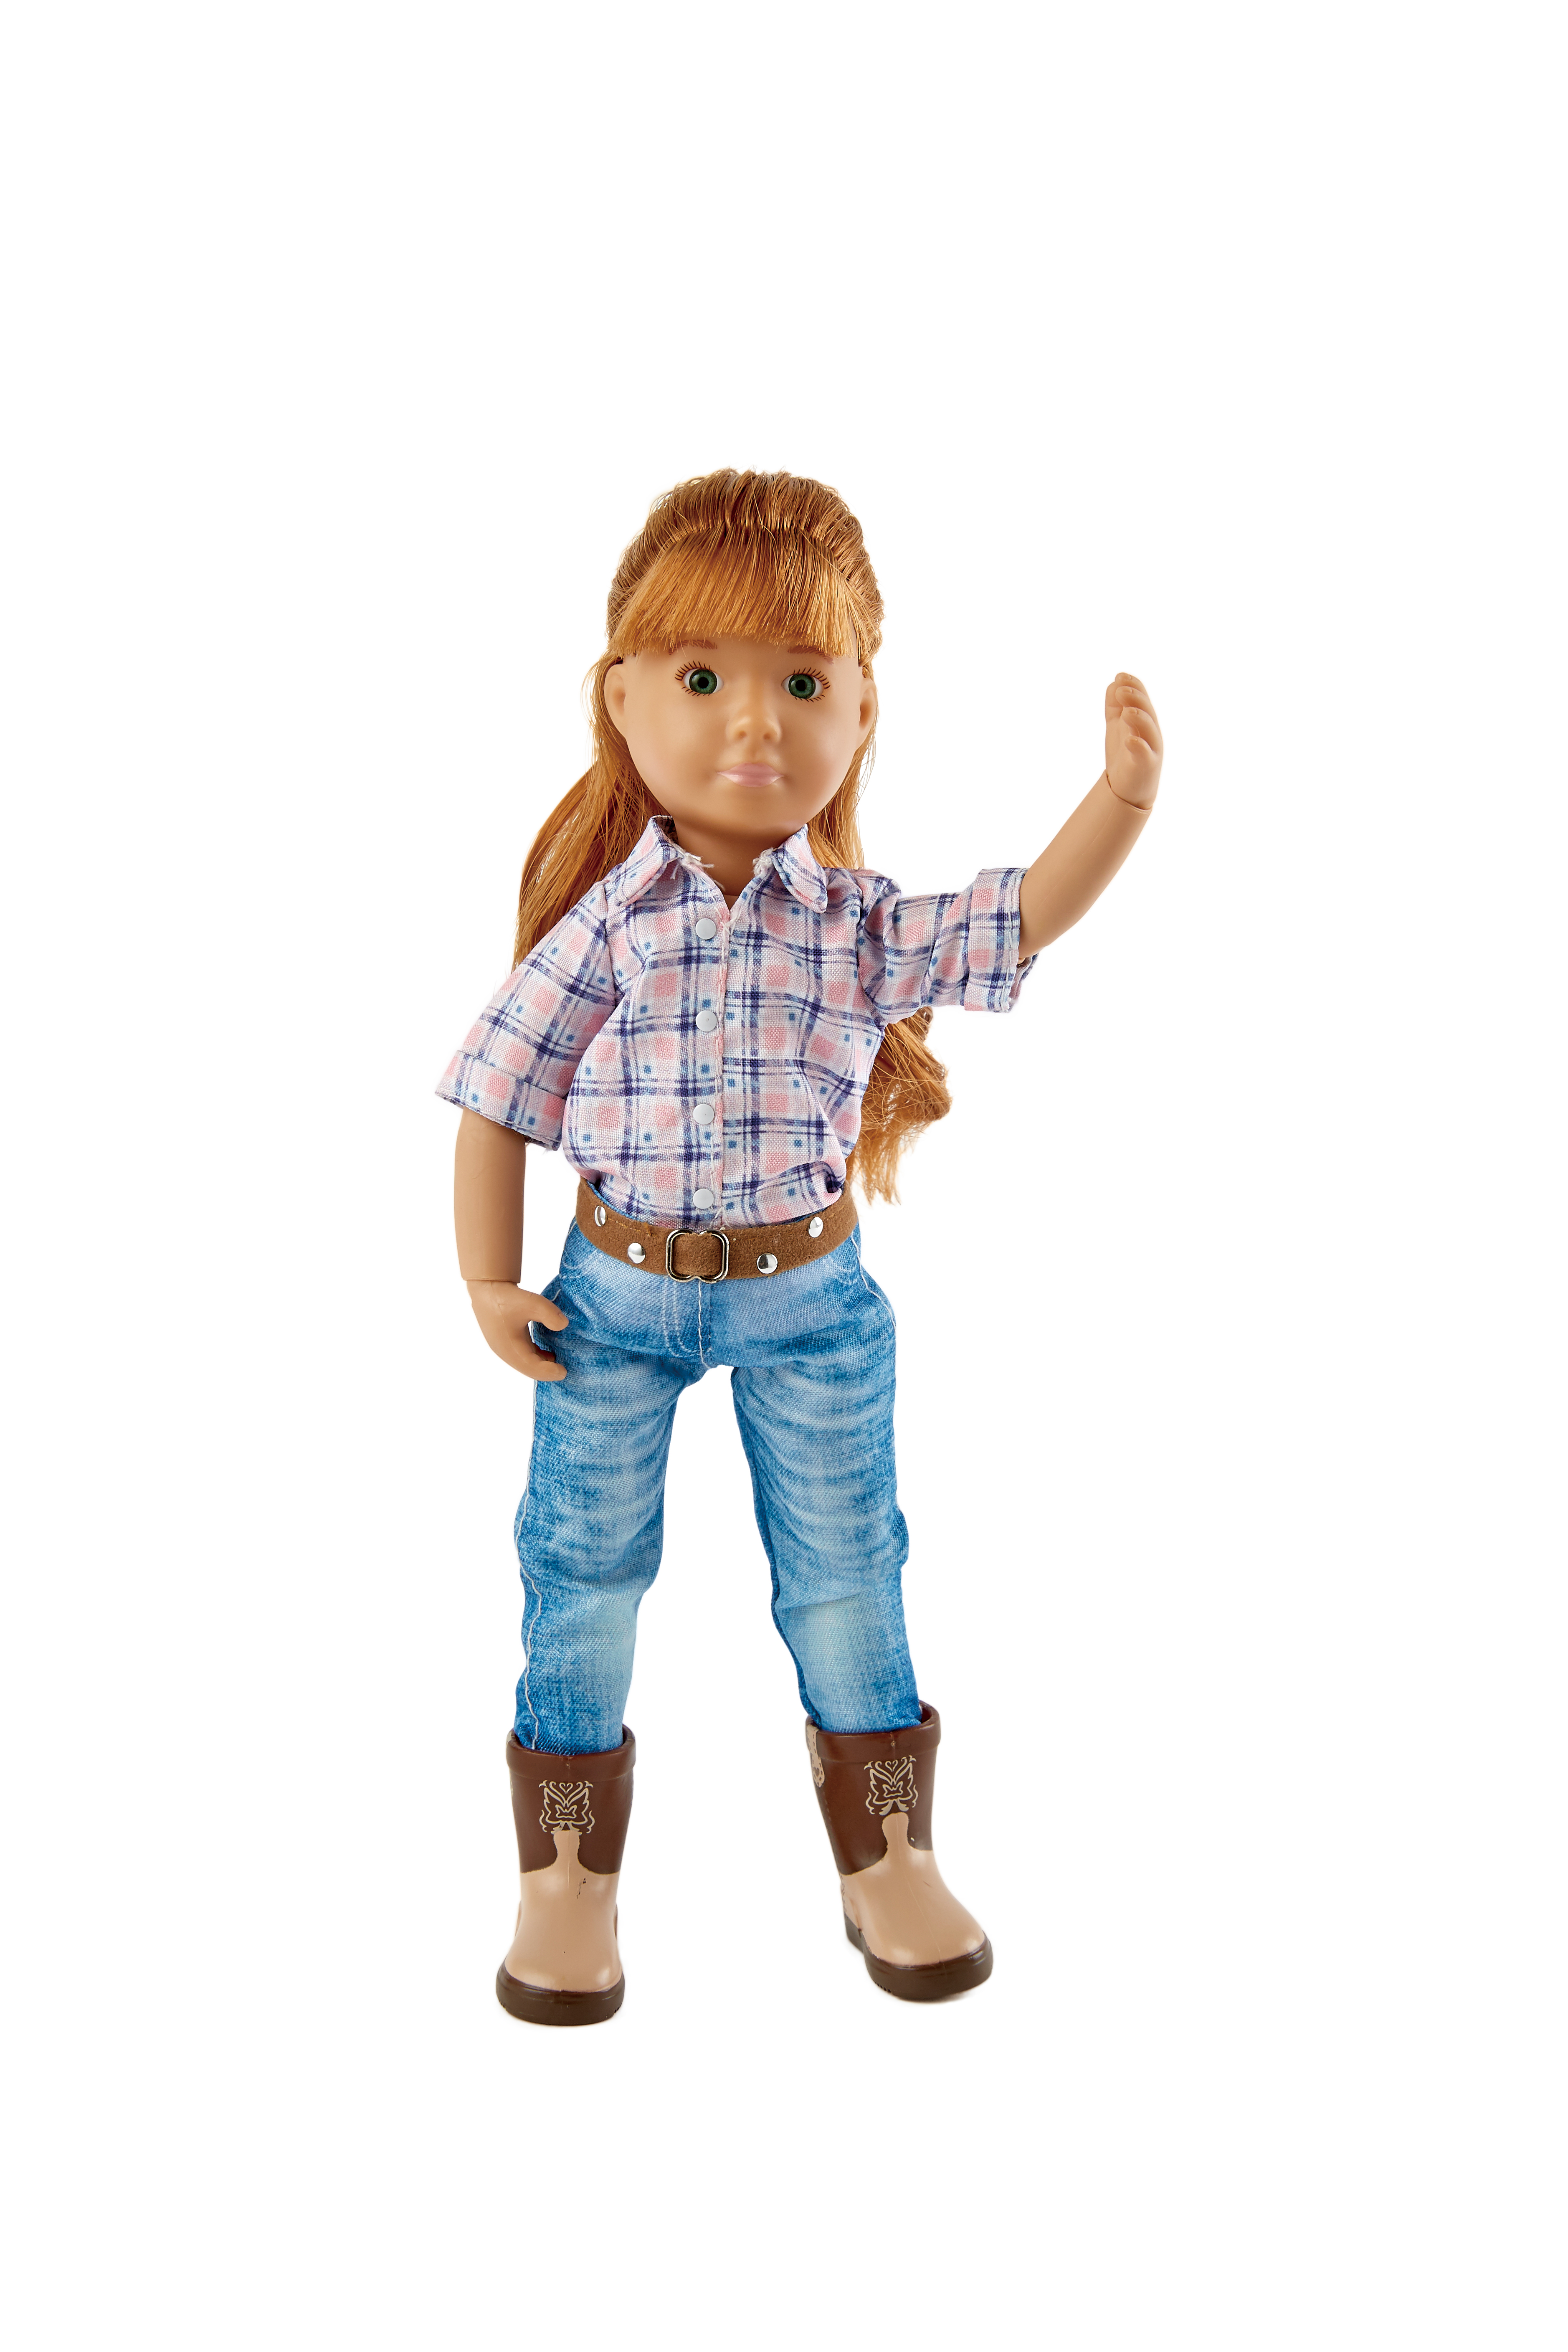 Кукла Хлоя Kruselings ковбой, 23 см, арт. 0126870